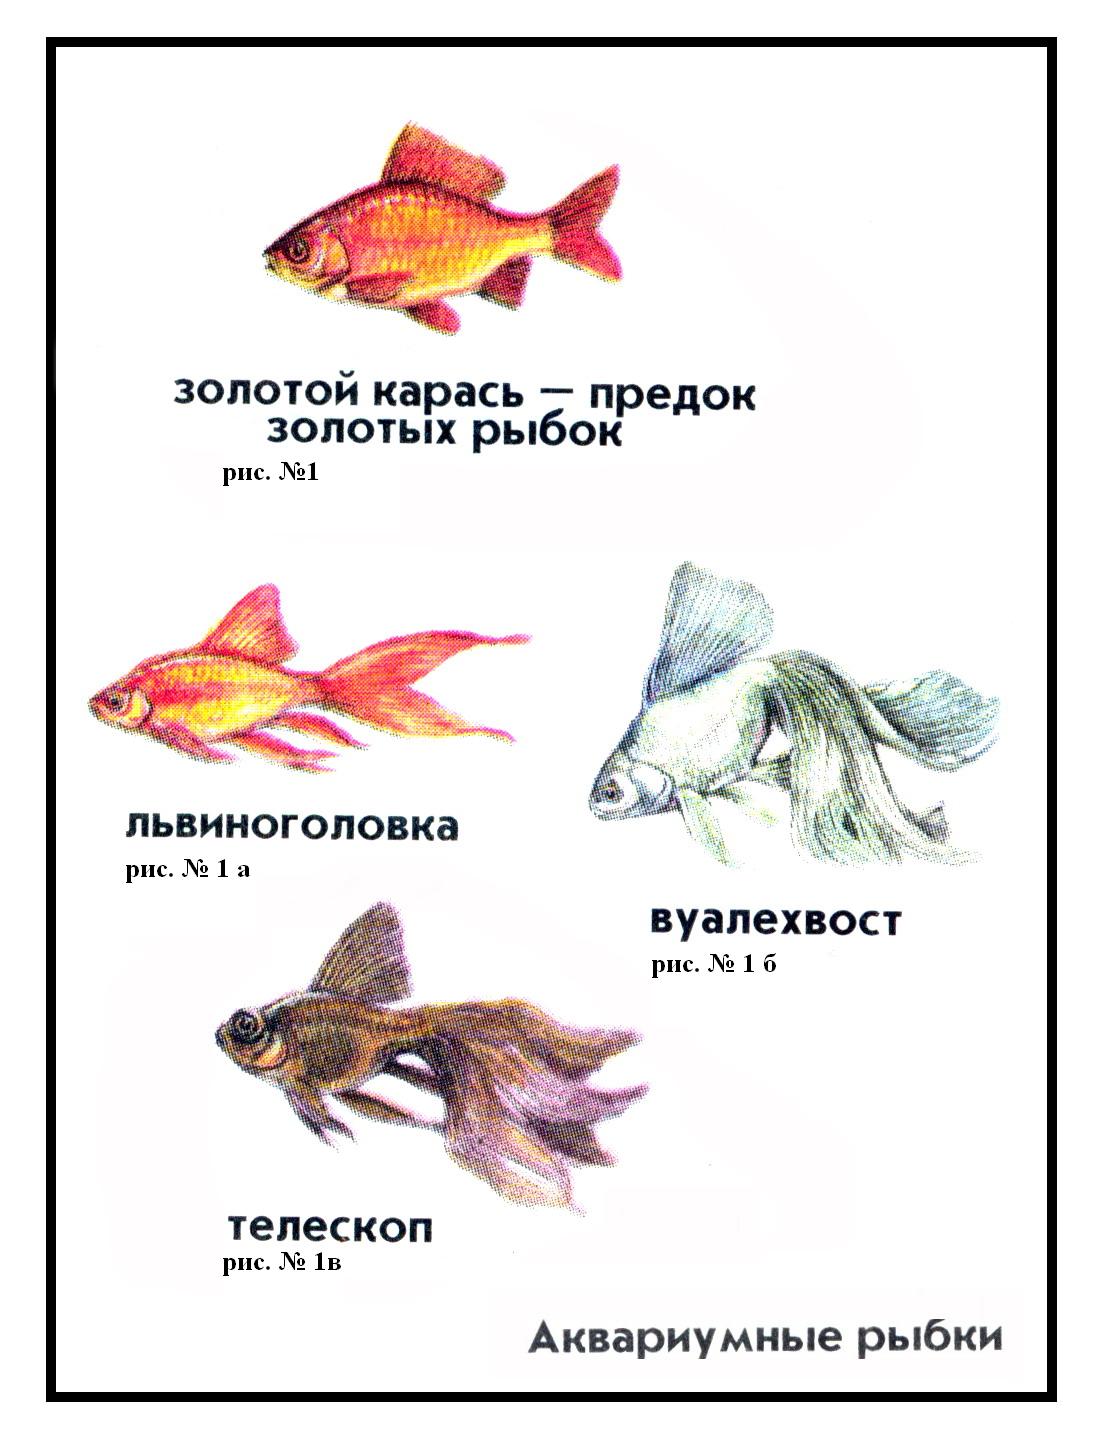 Названия аквариумных рыбок с фотографиями